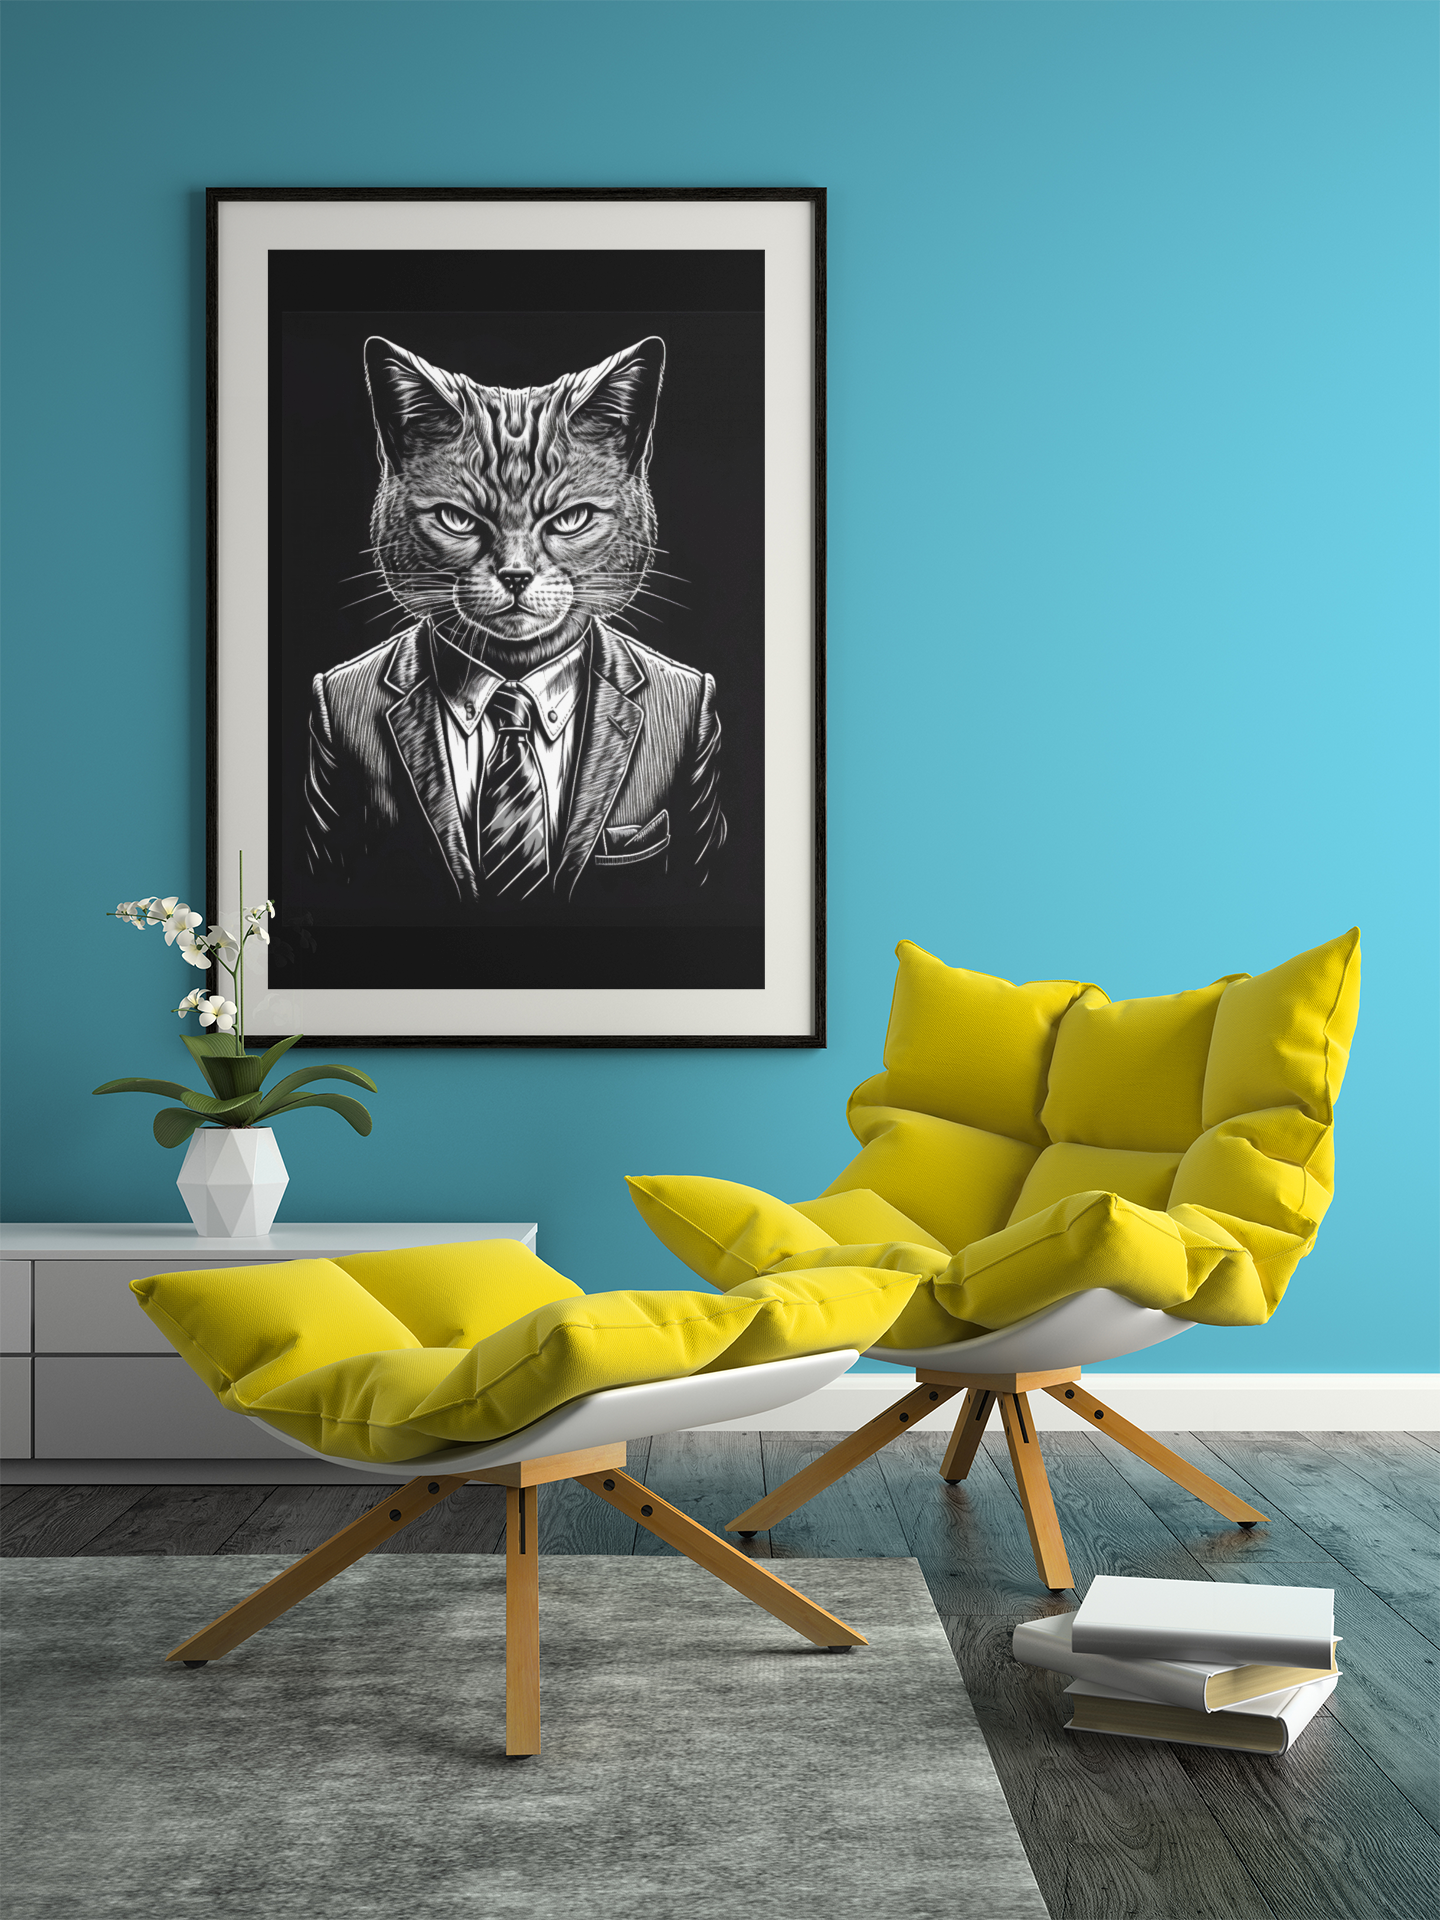 Cat Boss Framed Print